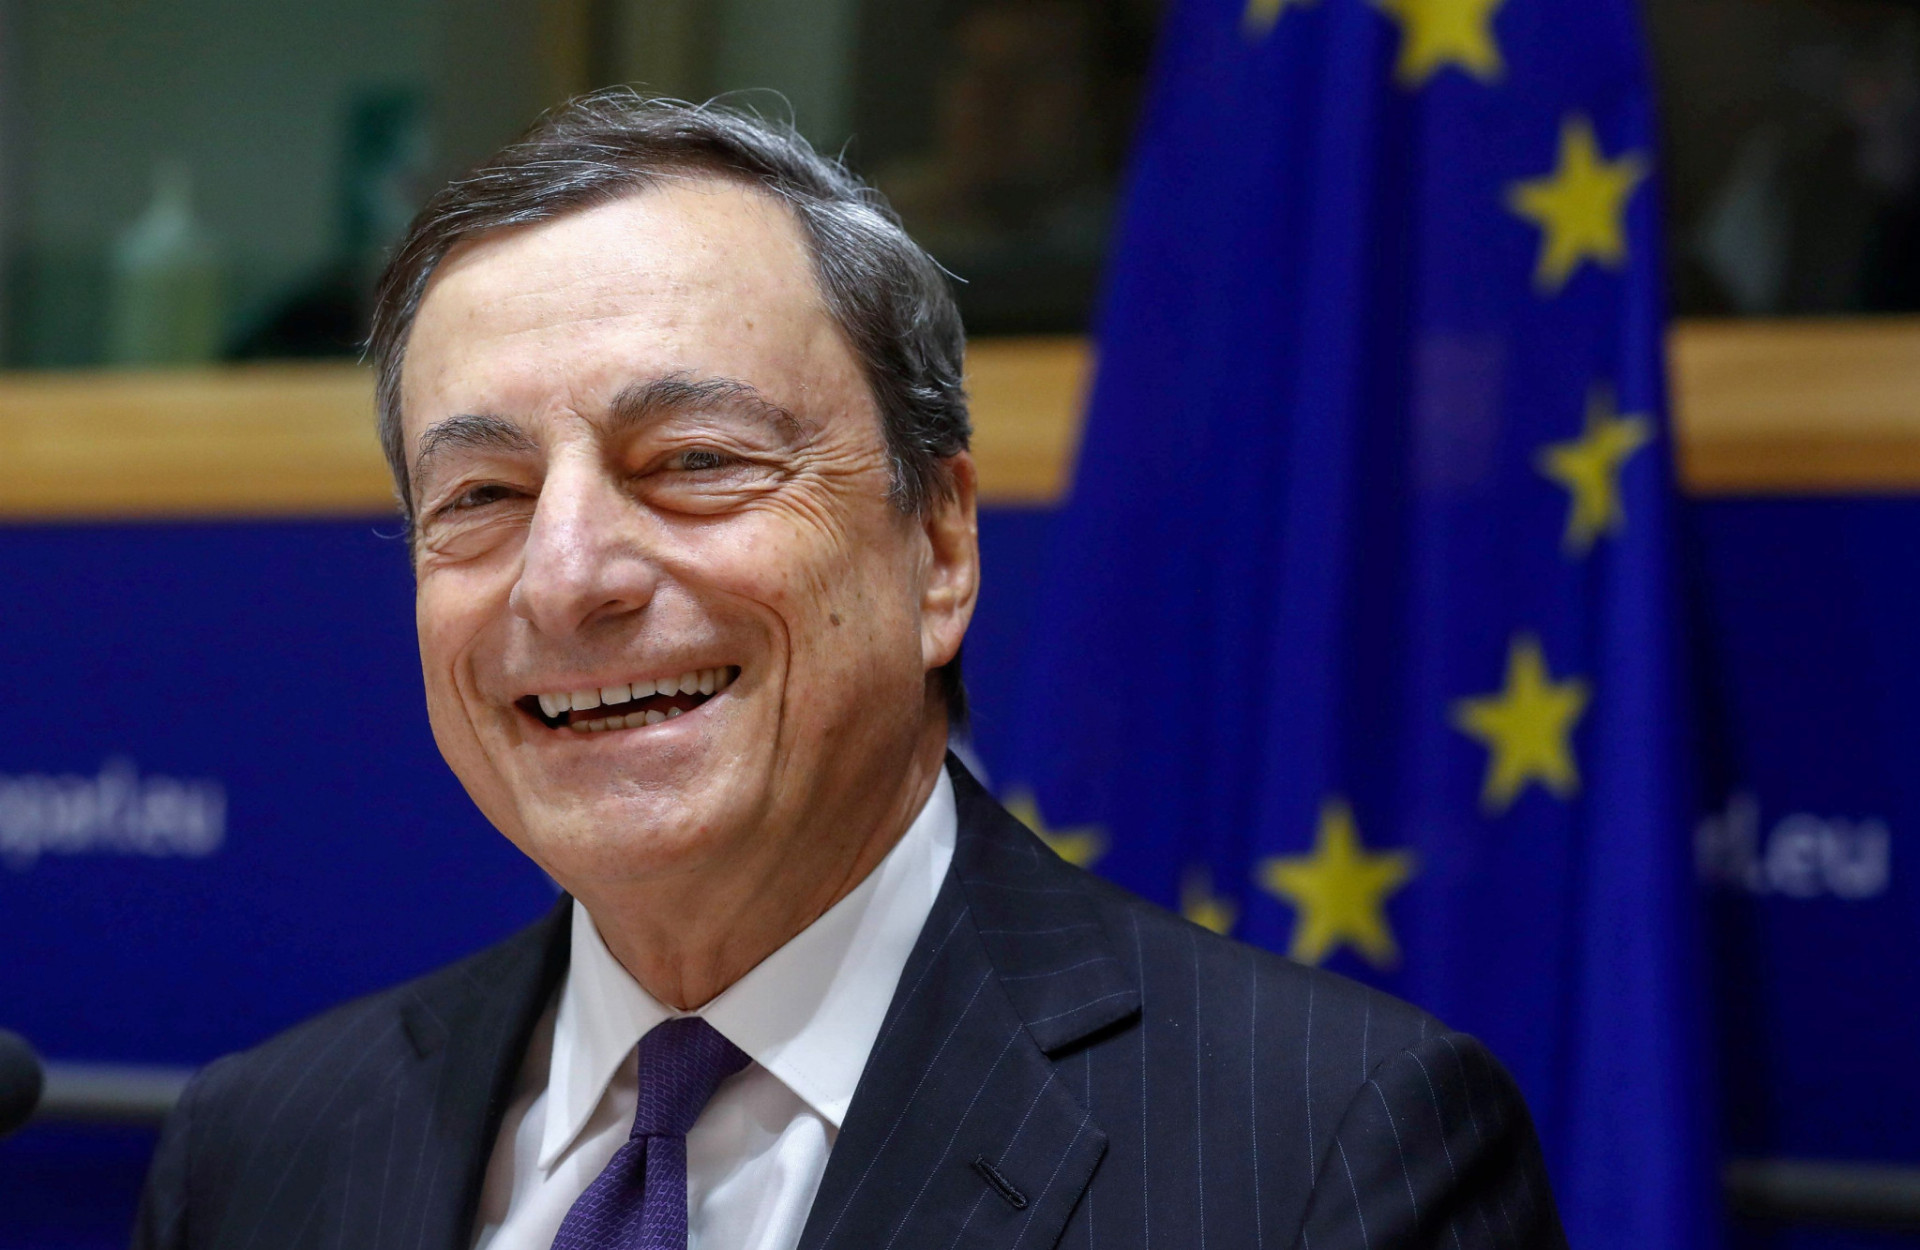 Podľa šéfa Európskej centrálnej banky Maria Draghiho nepatrí kurz eura medzi ciele menovej politiky.